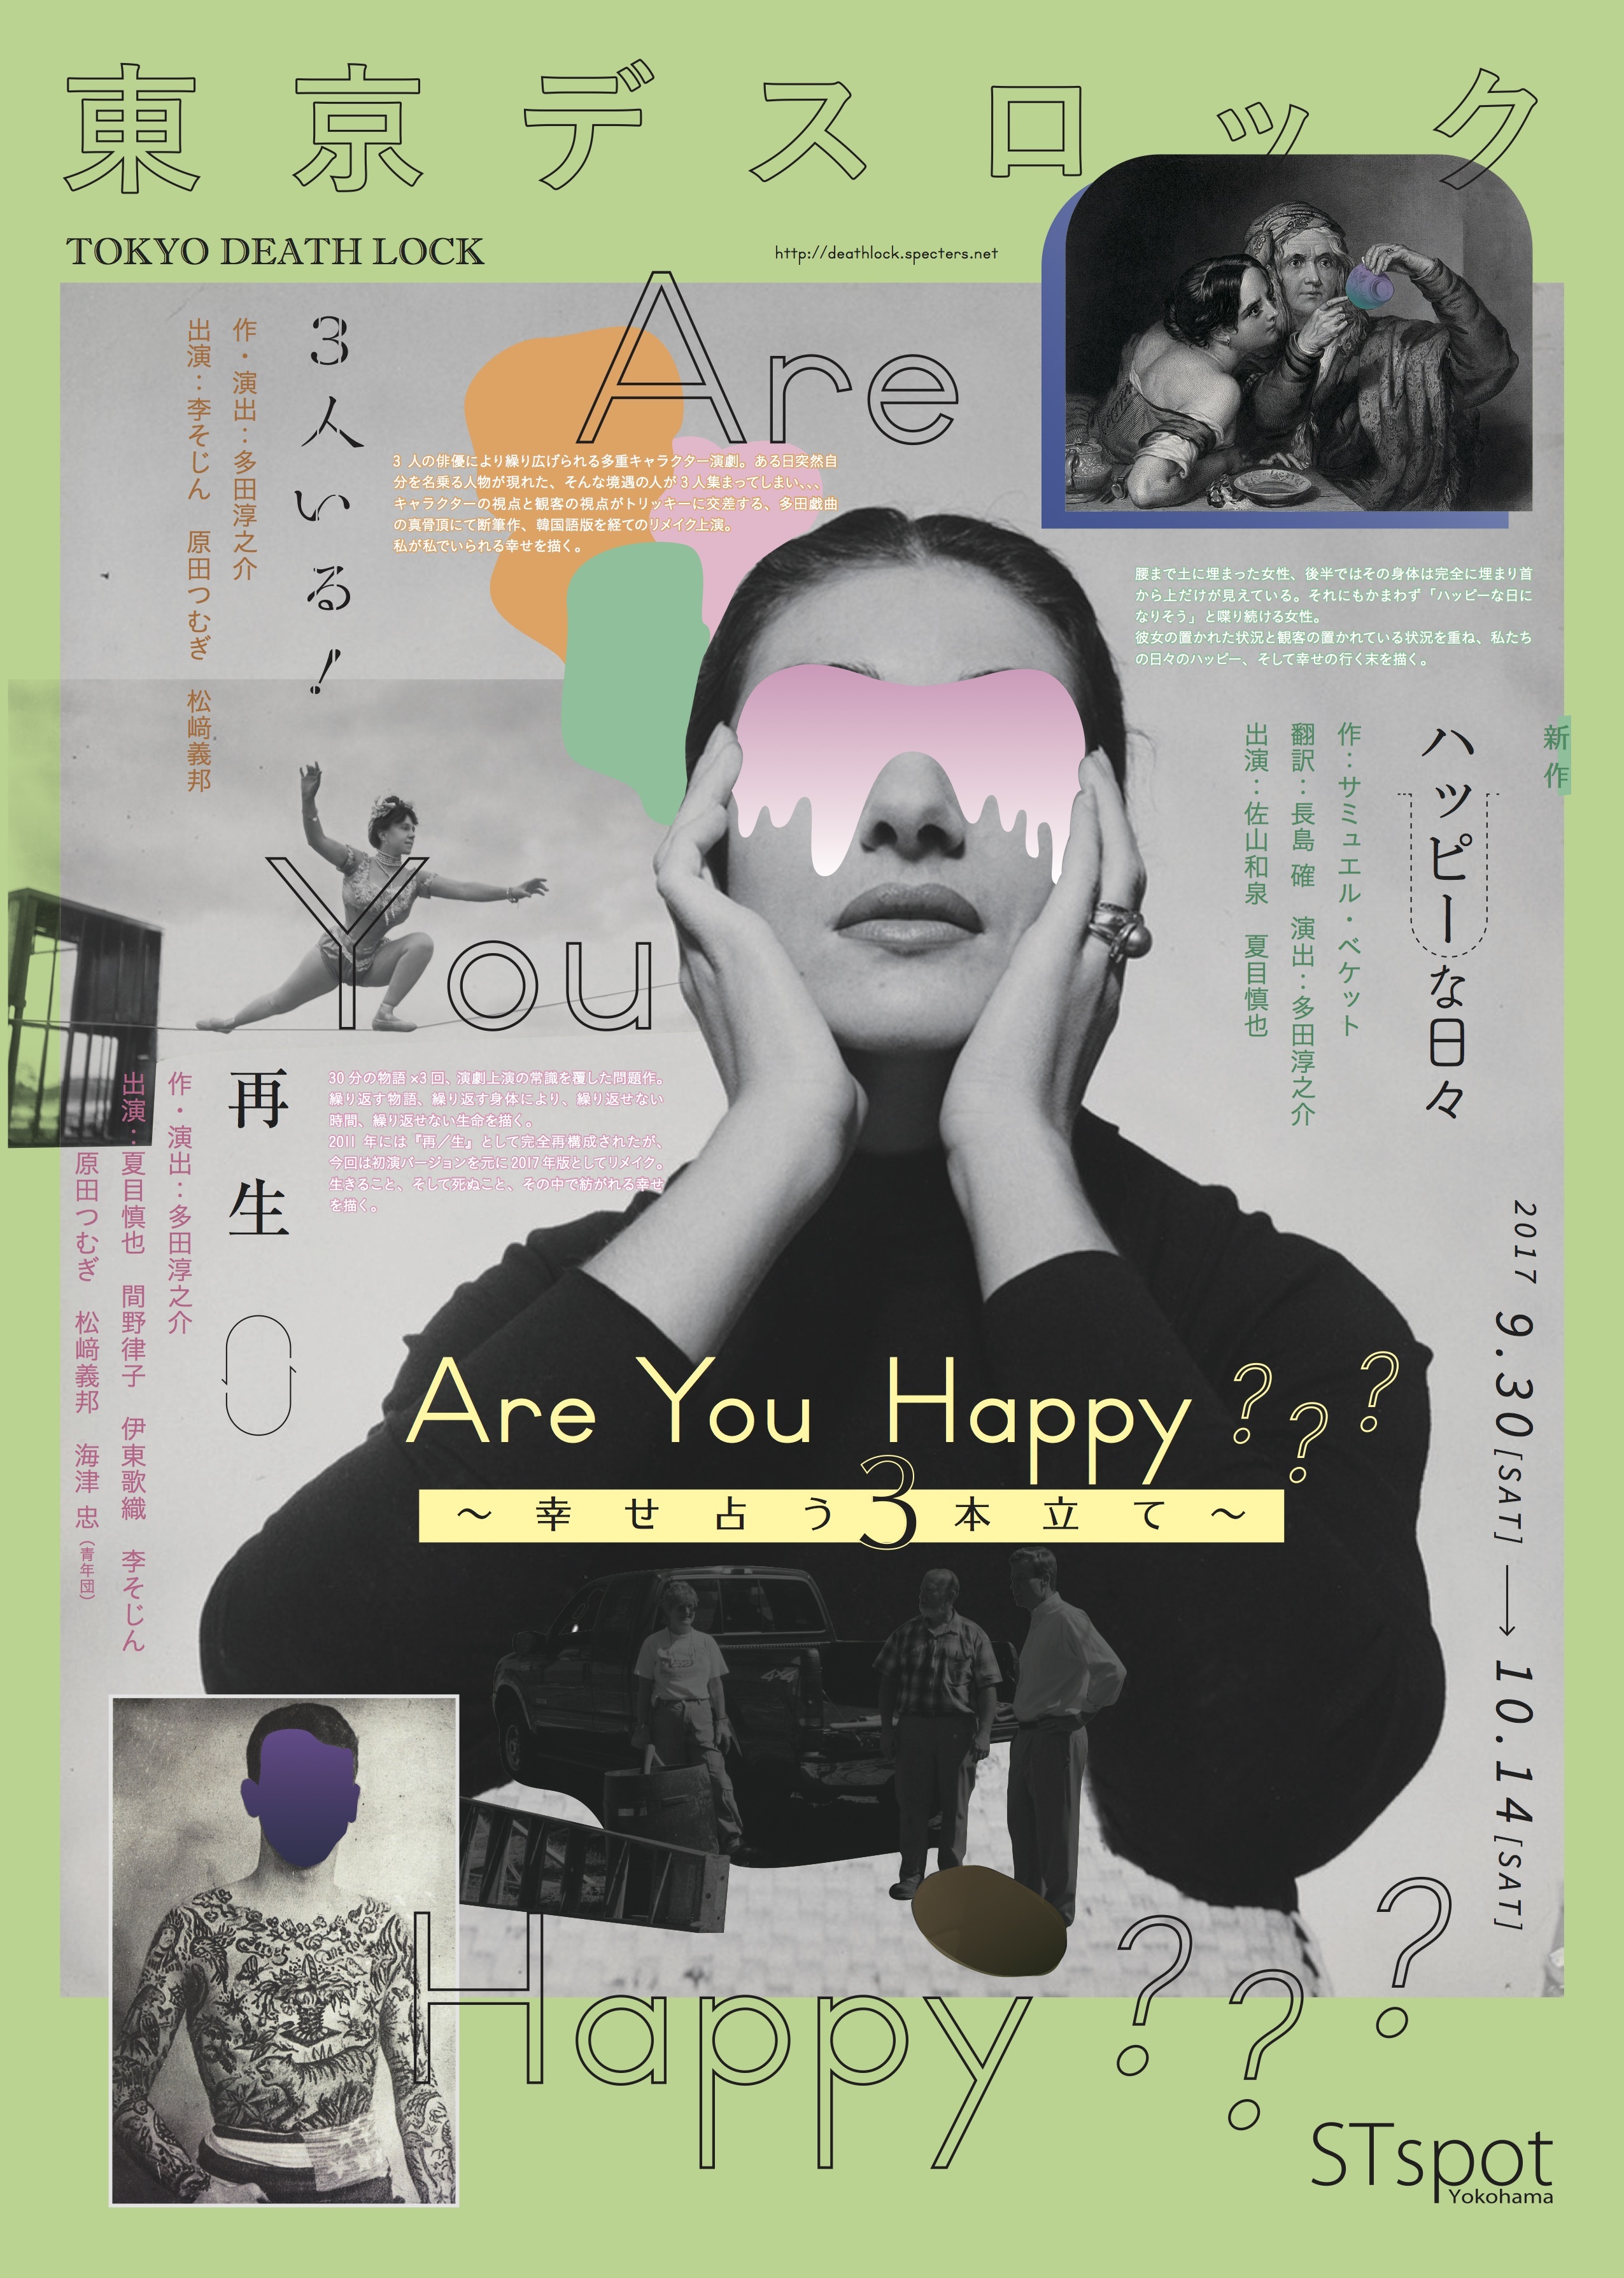 東京デスロック公演『Are You Happy???──幸せ占う３本立て』のチラシ